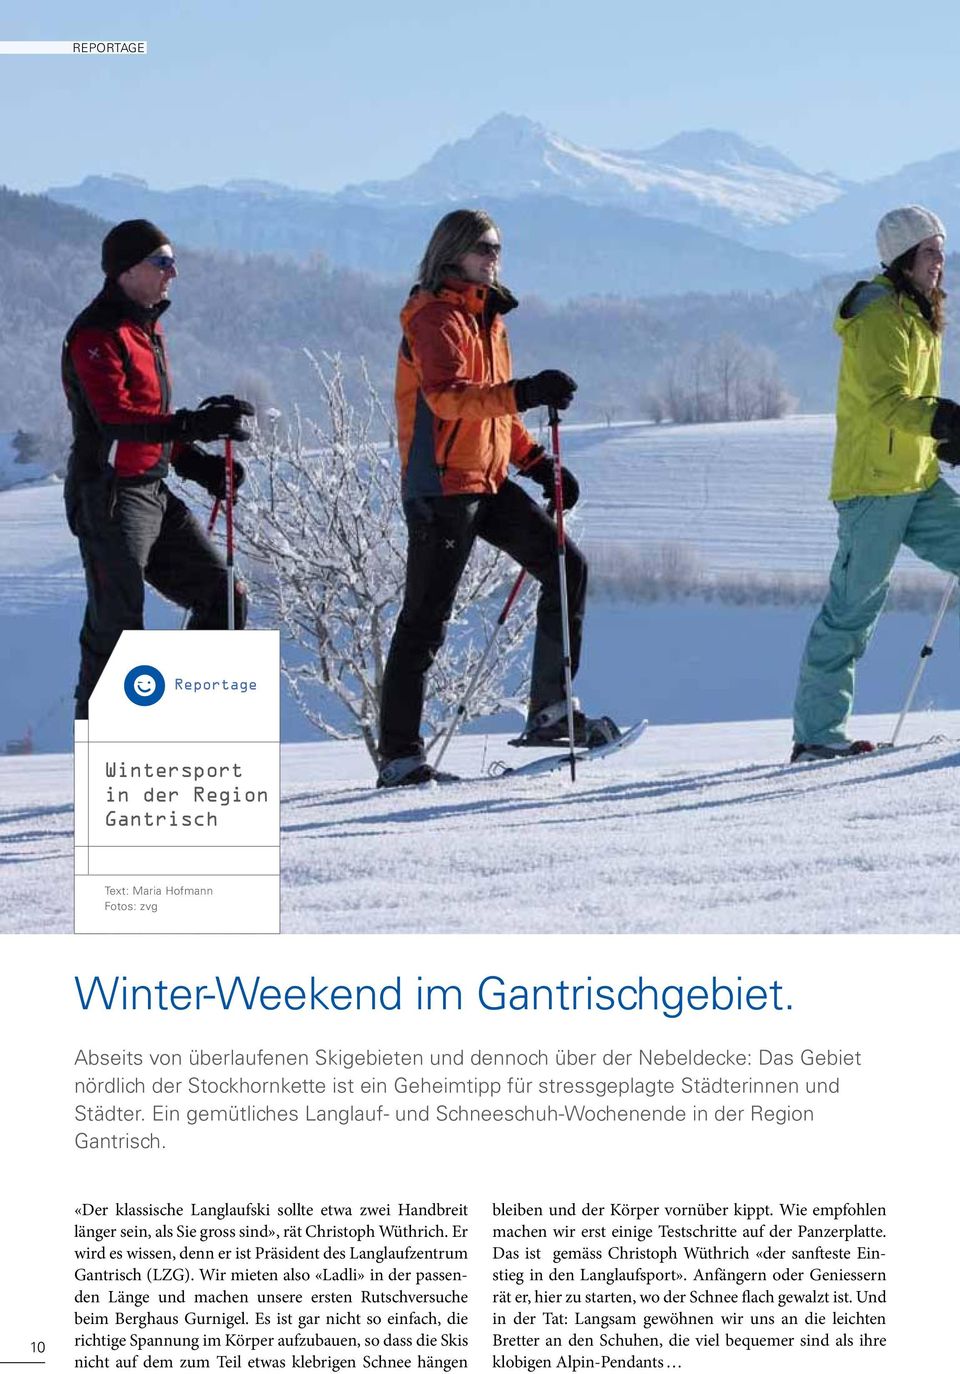 Ein gemütliches Langlauf- und Schneeschuh-Wochenende in der Region Gantrisch. 10 «Der klassische Langlaufski sollte etwa zwei Handbreit länger sein, als Sie gross sind», rät Christoph Wüthrich.